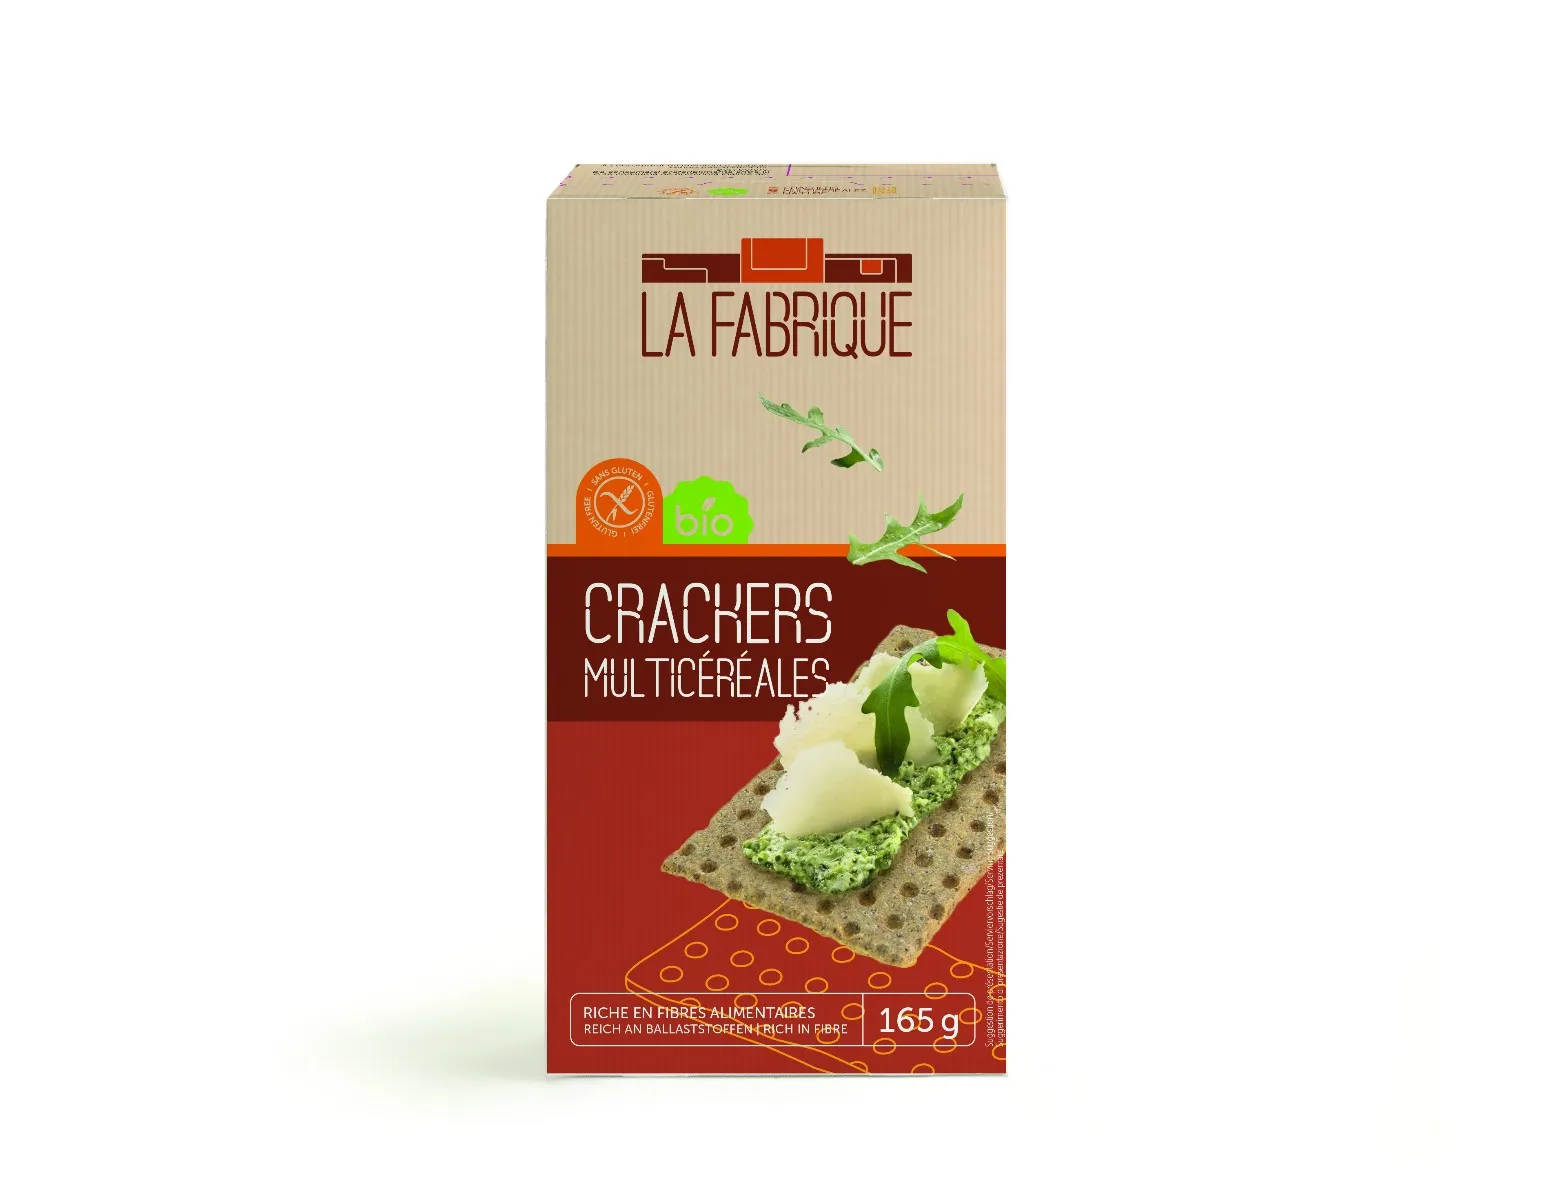 Crackers Bio multicereale fara gluten, 160g, La Fabrique